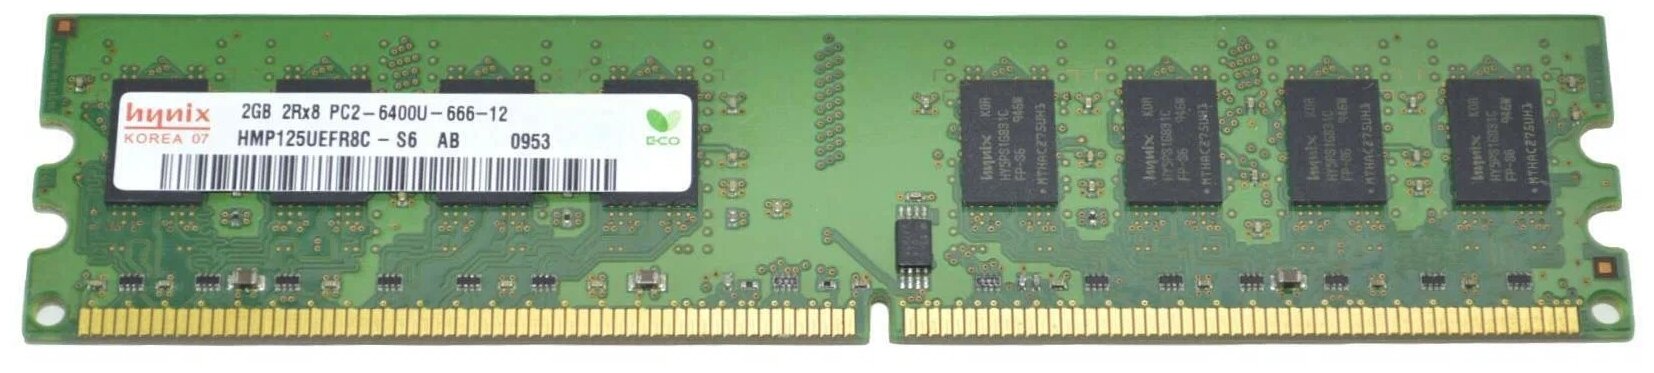 Оперативная память Hynix 2 ГБ DDR2 800 МГц DIMM CL6